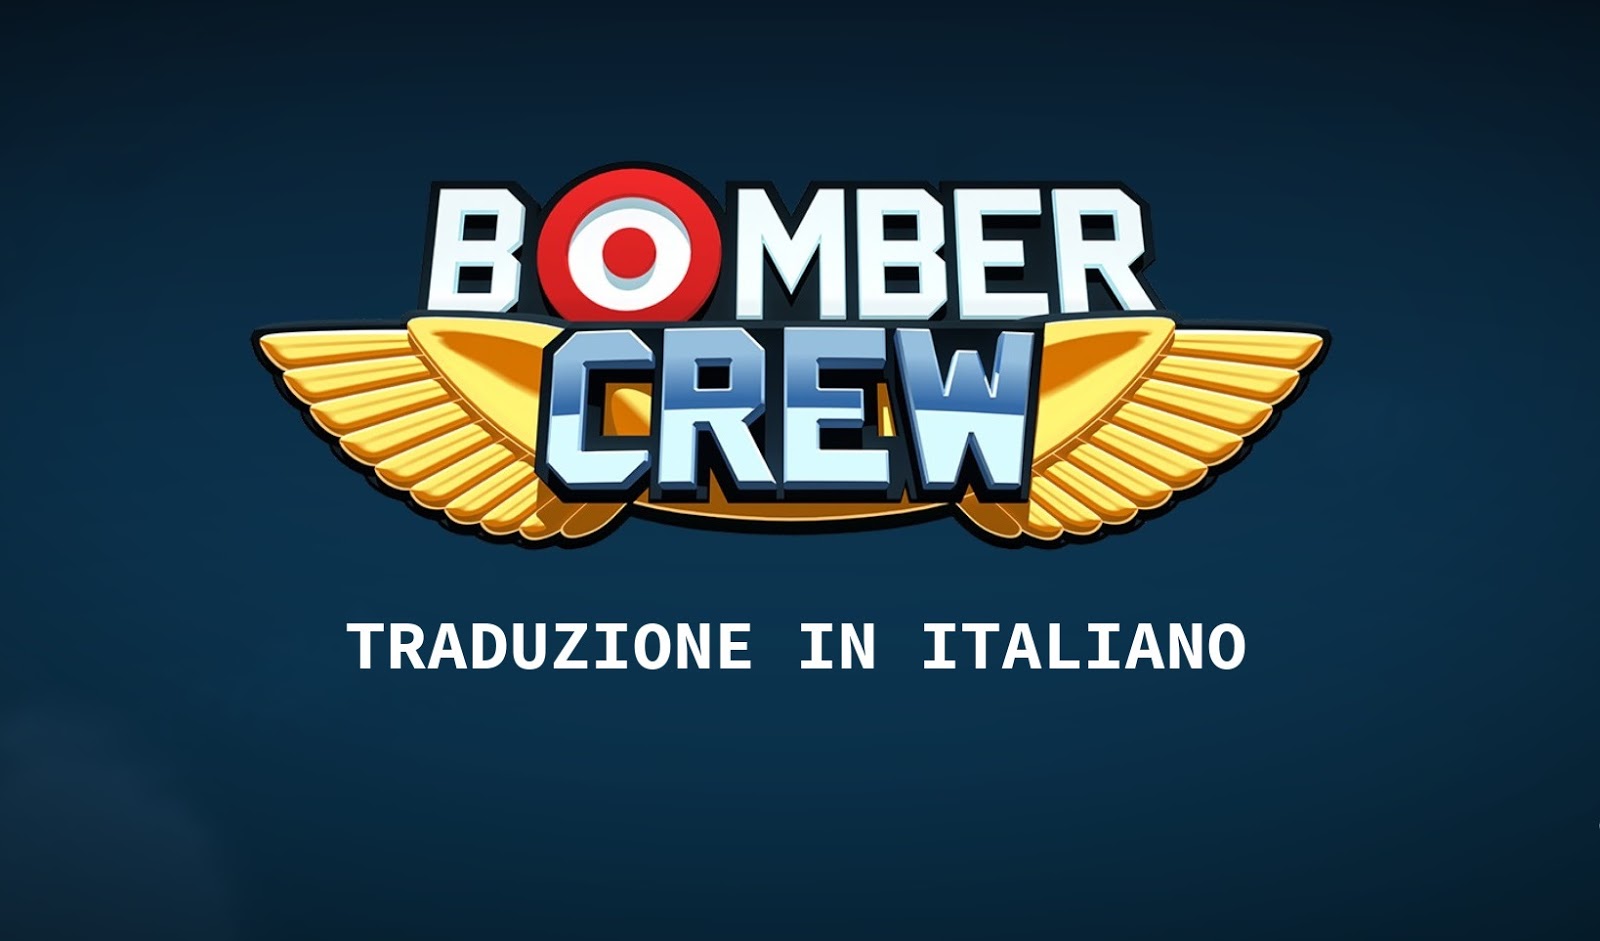 Bomber crew steam фото 83